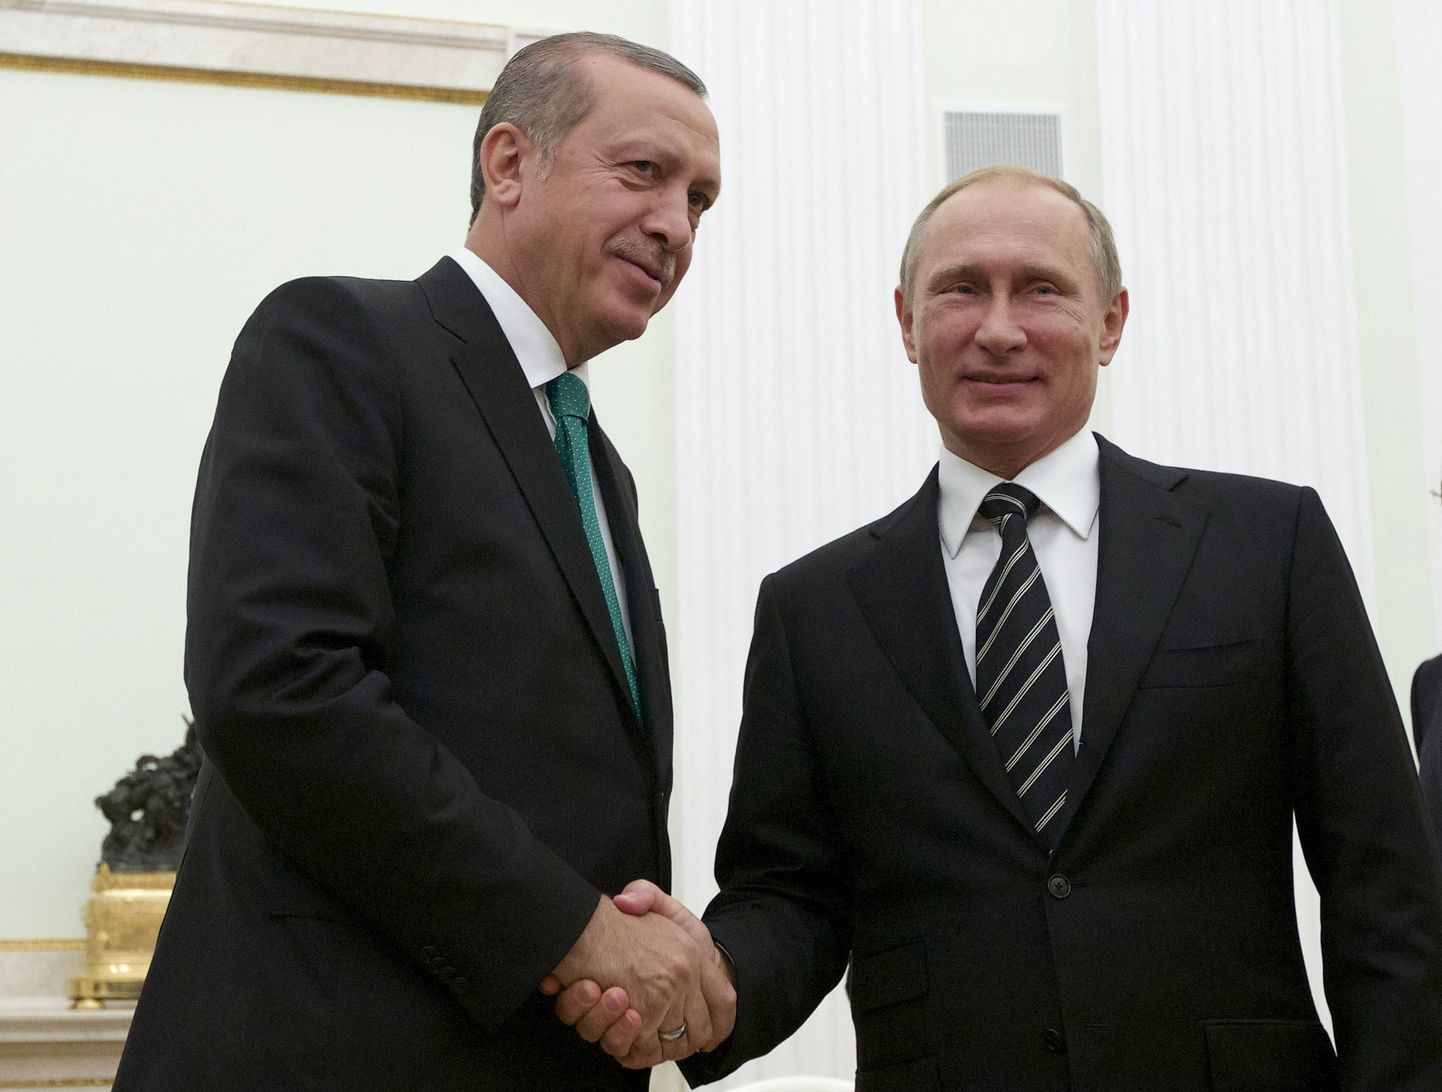 Türgi president Tayyip Erdogan dja Venemaa president Vladimir Putin